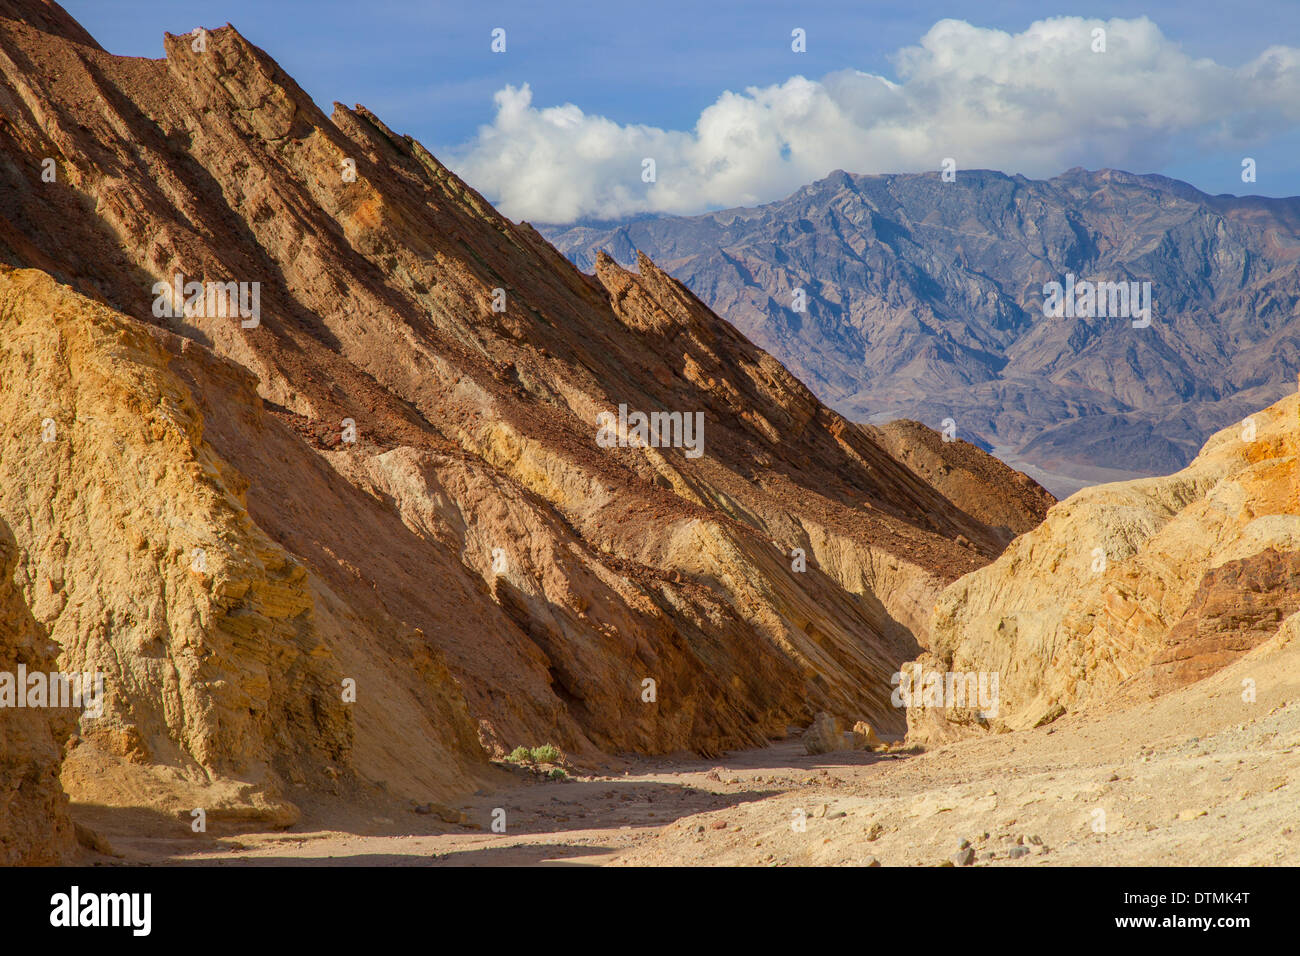 View through Golden Canyon, Death Valley National Park, California USA Stock Photo